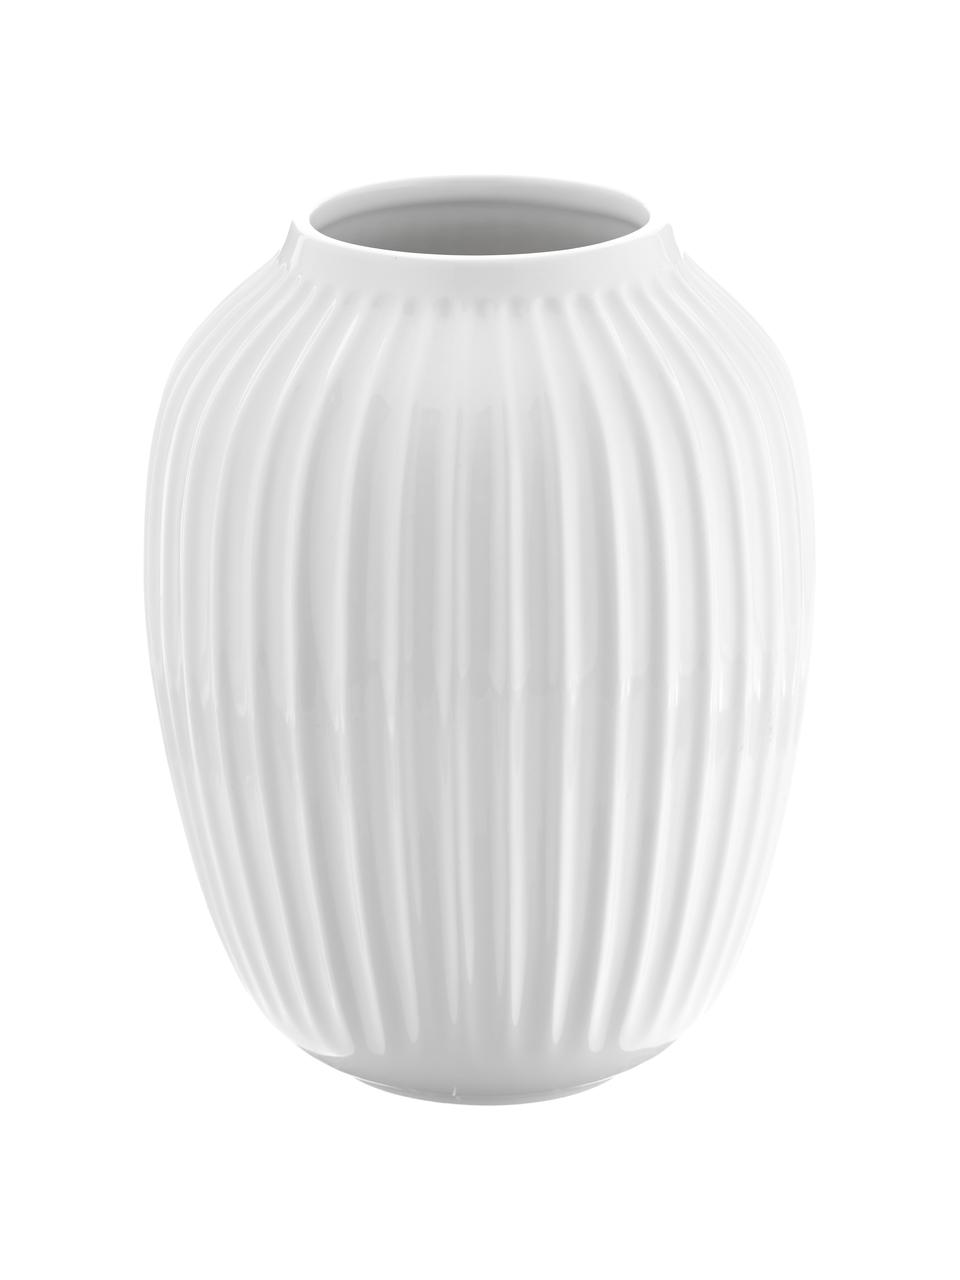 Handgefertigte Porzellan-Vase Hammershoi in Weiss, Porzellan, Weiss, Ø 20 x H 25 cm